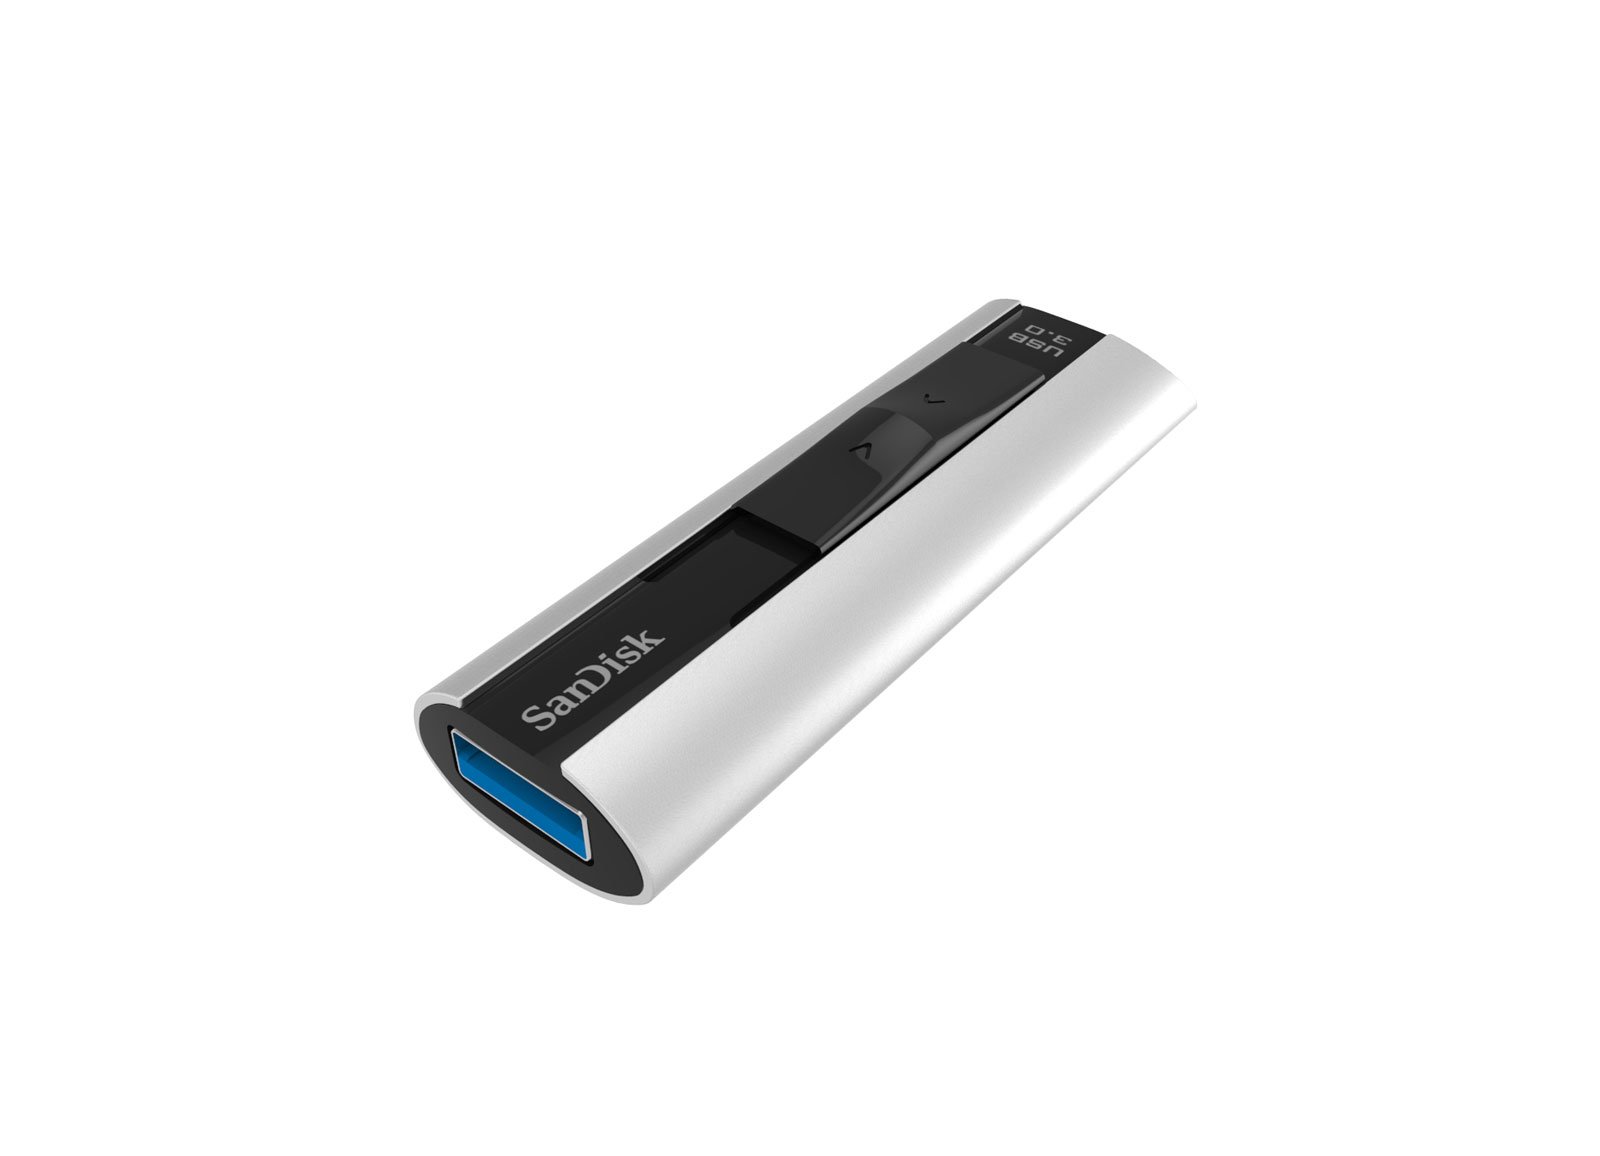 SanDisk Extreme Pro USB 3.0 - Schraege Draufsicht Geschlossen